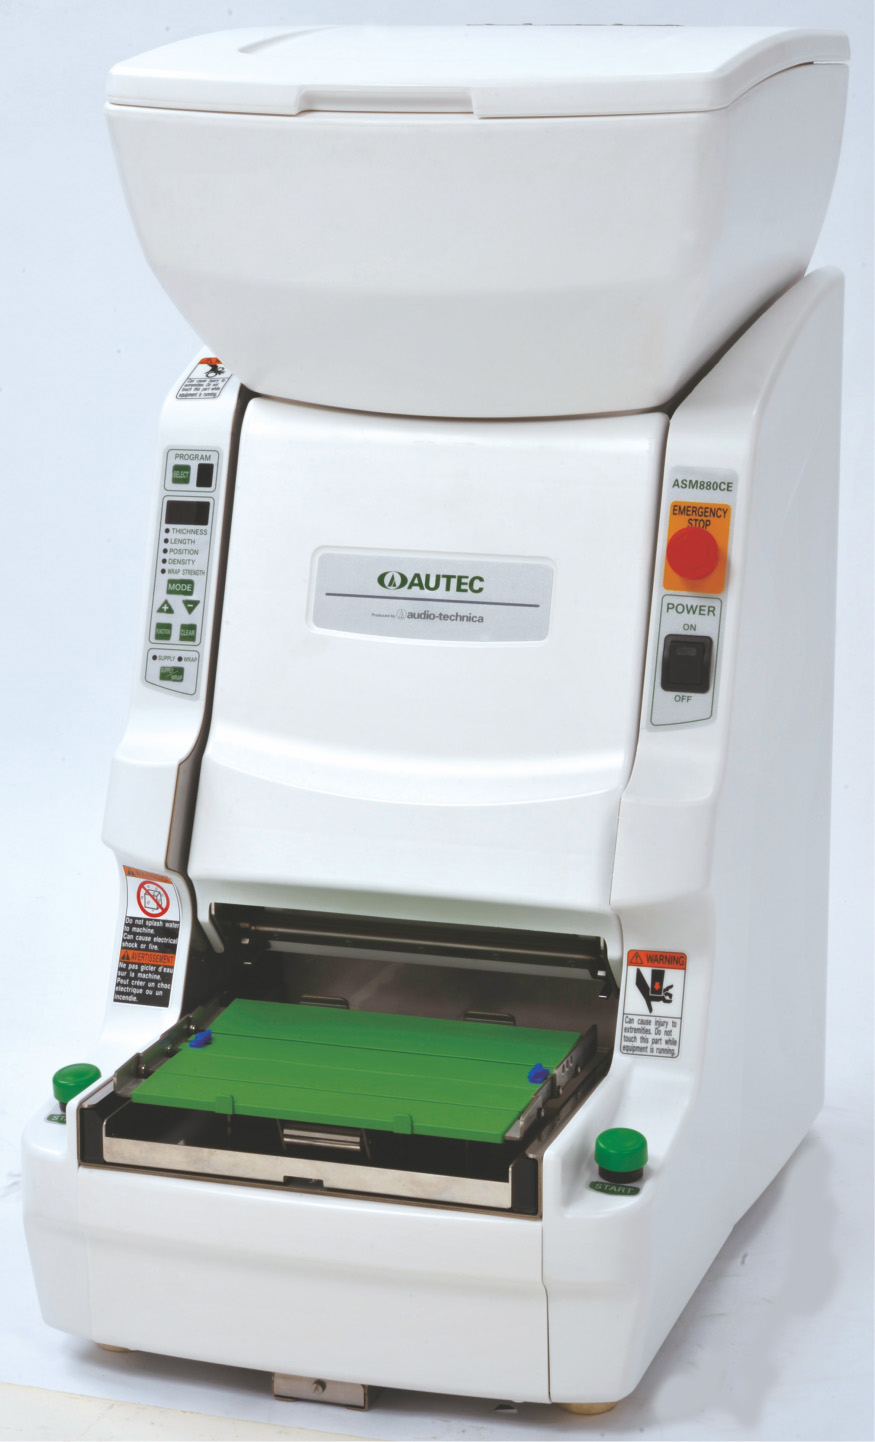 ASM880 CE – robot maki automático para elaborar diferentes tipos de  rollitos sushi